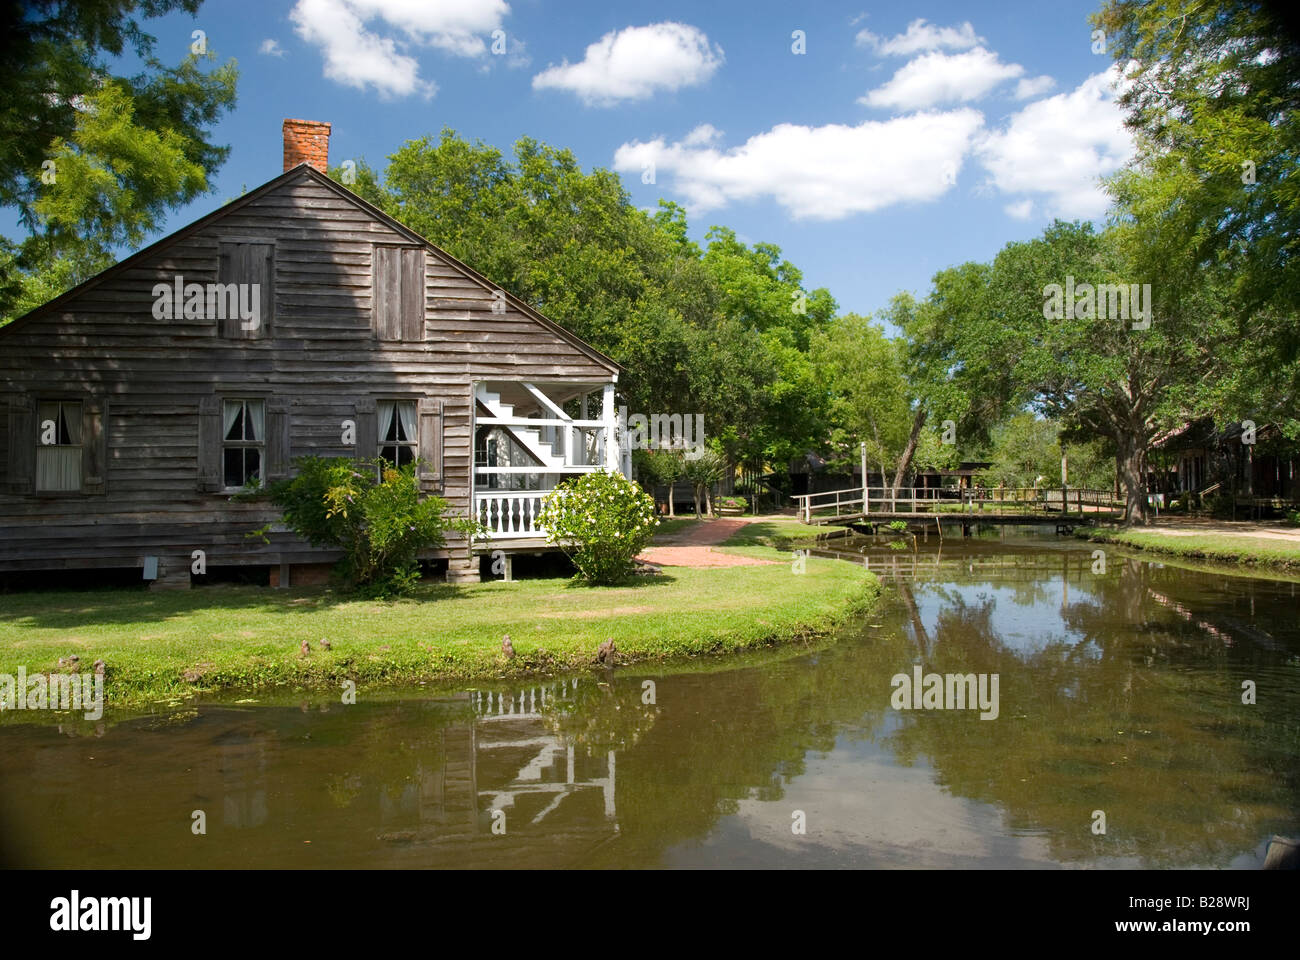 The Castille House, Acadian Village, Lafayette, Louisiana Stock Photo